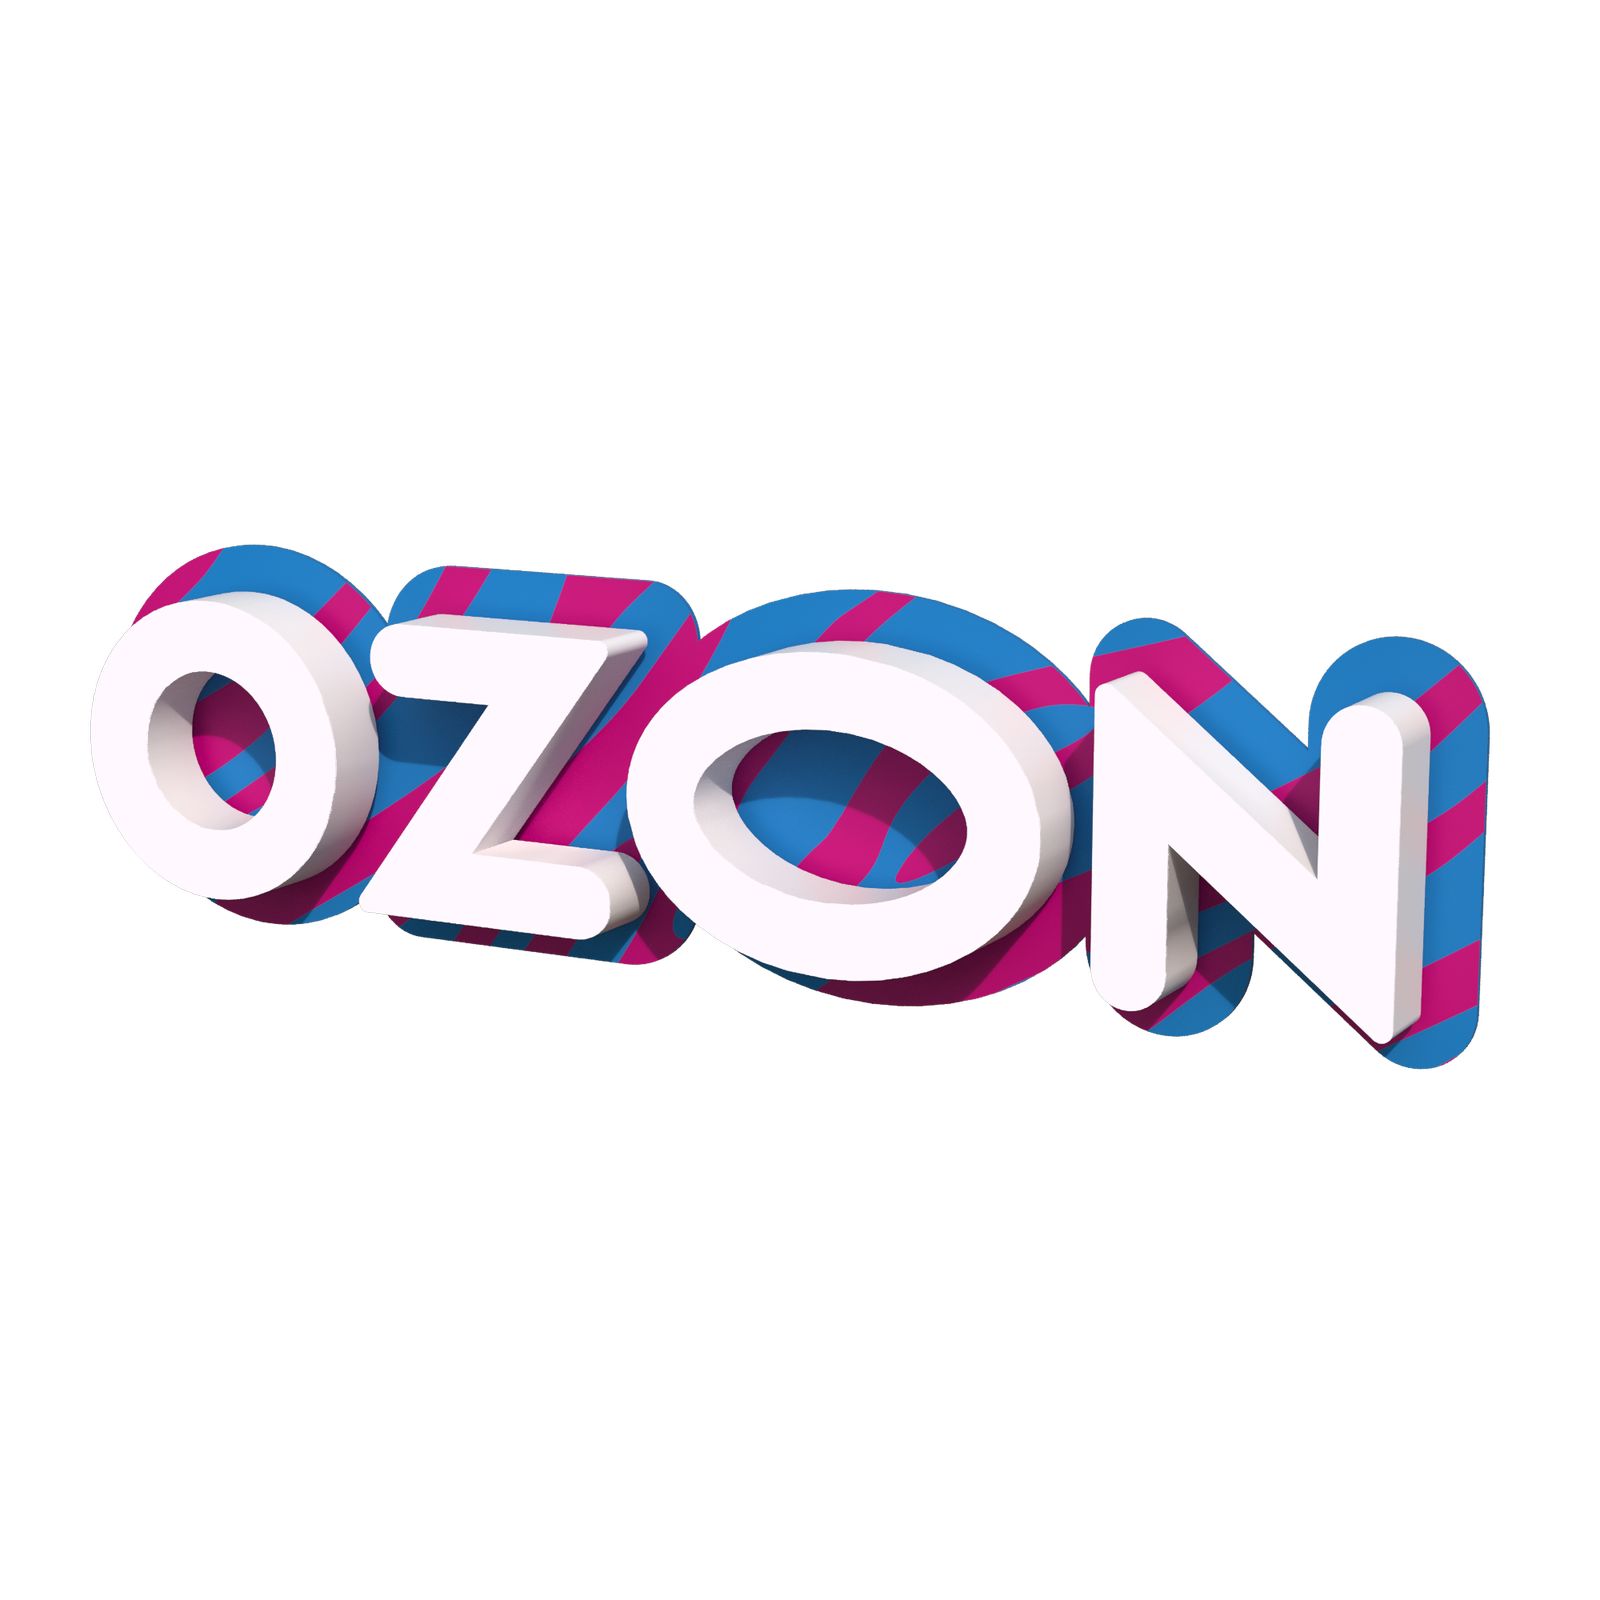 Вывеска озон зебра. Озон вывески новый бренд. Вывеска Озон Зебра 2100. Озон лого Зебра.